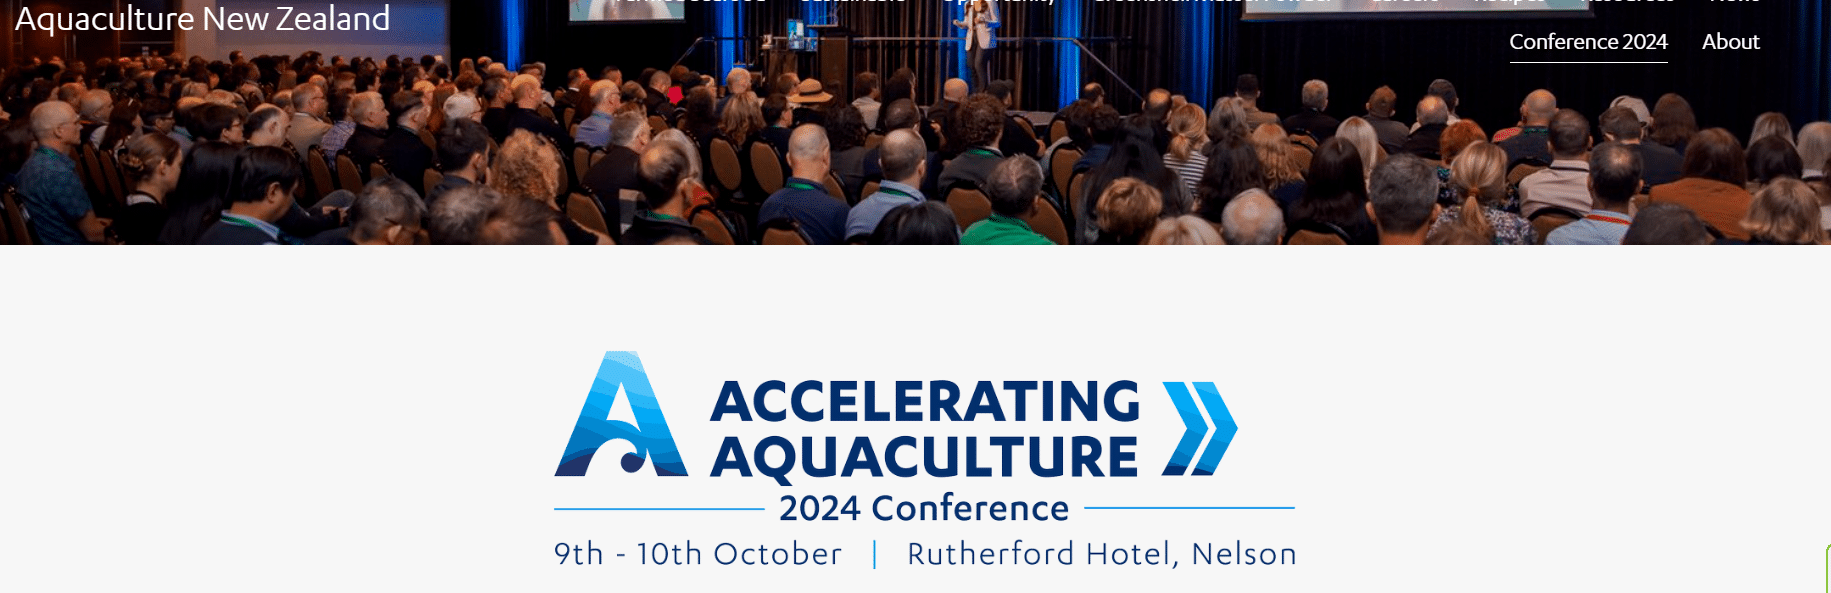 Aquaculture New Zealand 2024 Conference